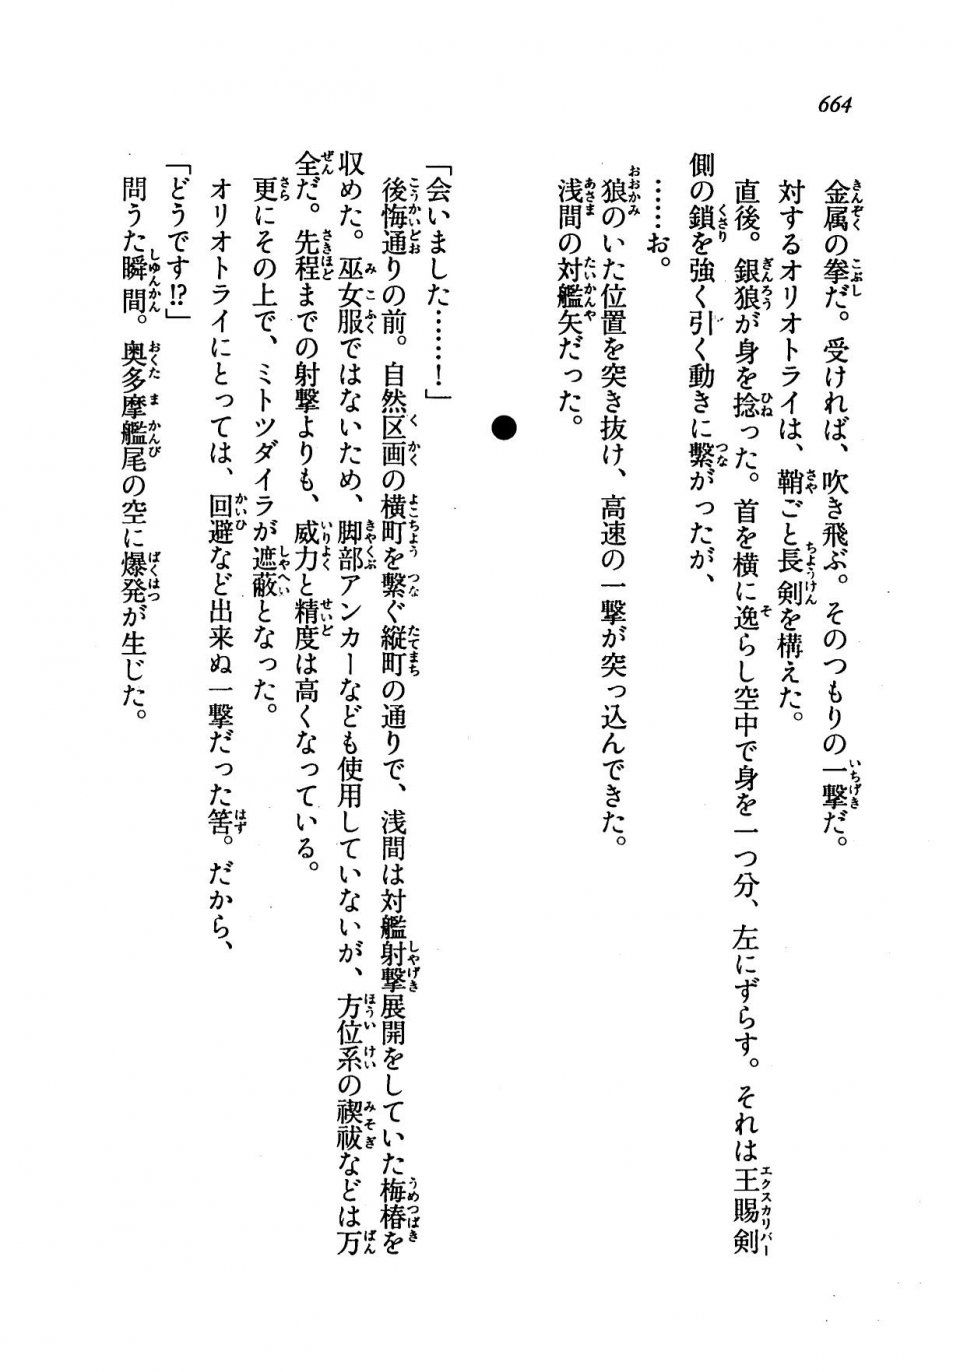 Kyoukai Senjou no Horizon LN Vol 19(8A) - Photo #664